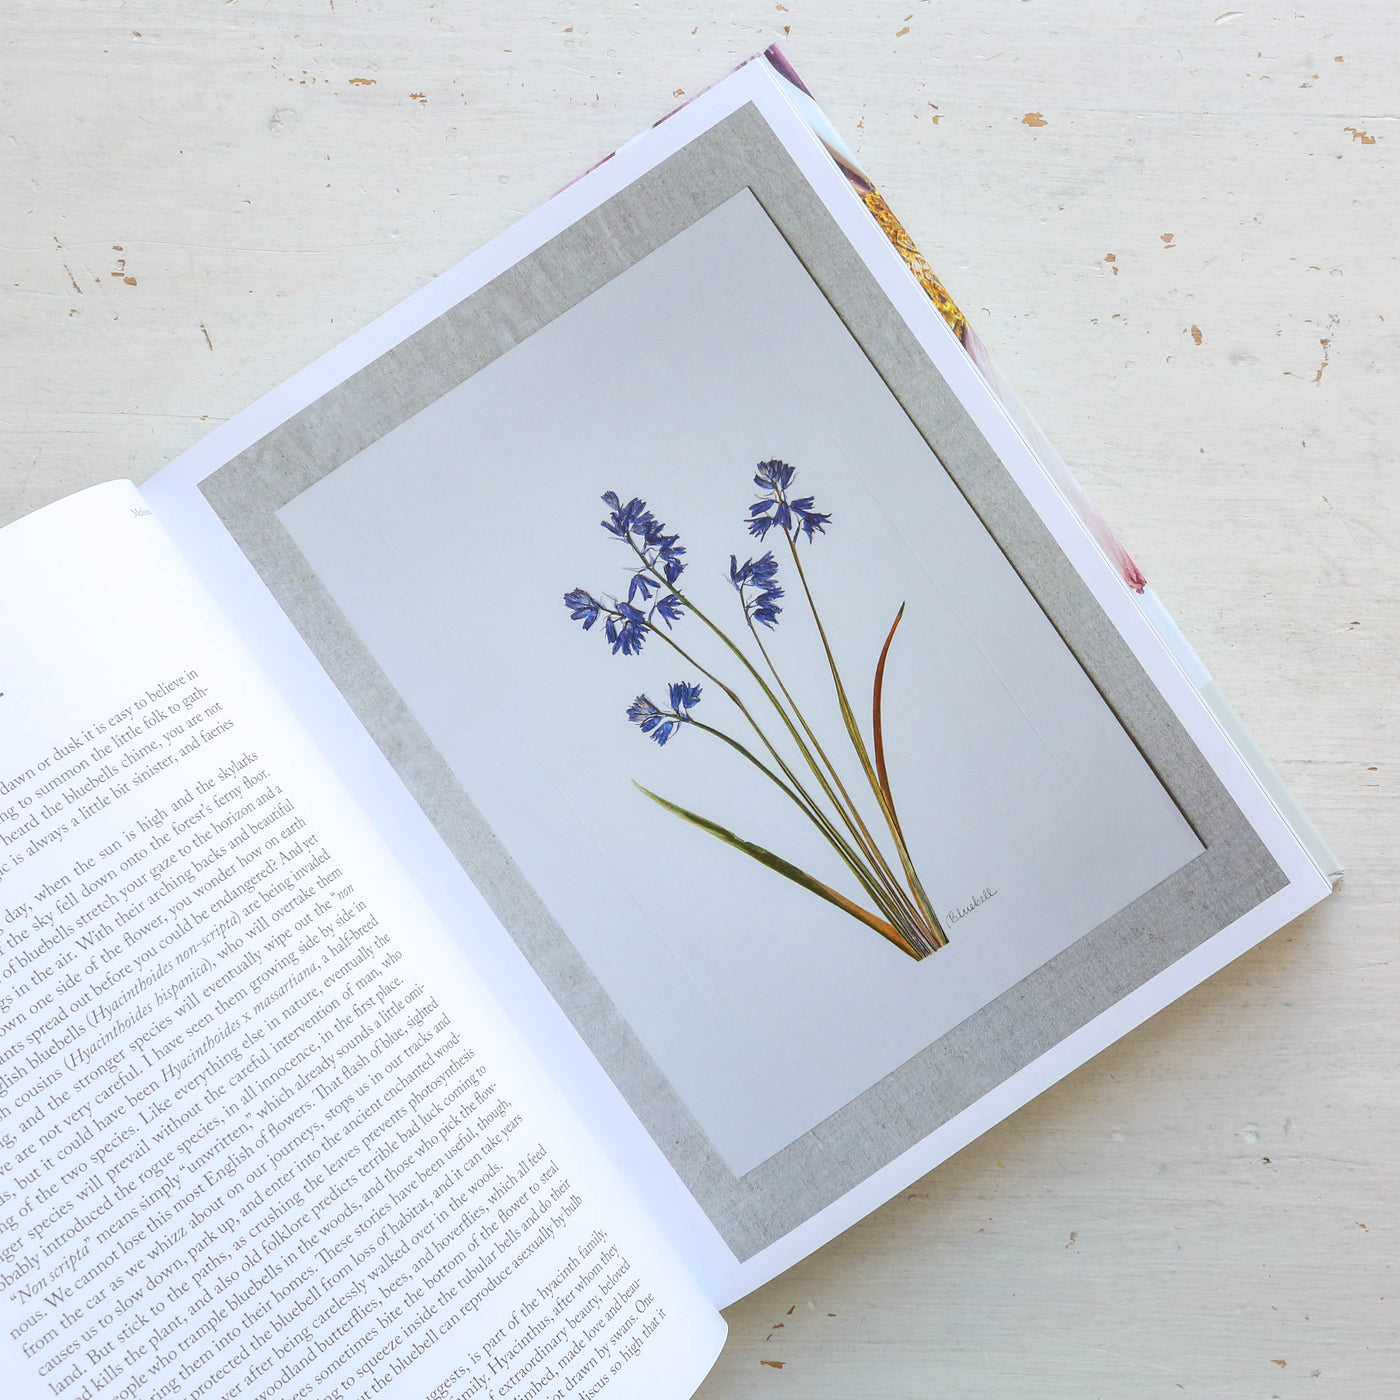 The Modern Flower Press Book